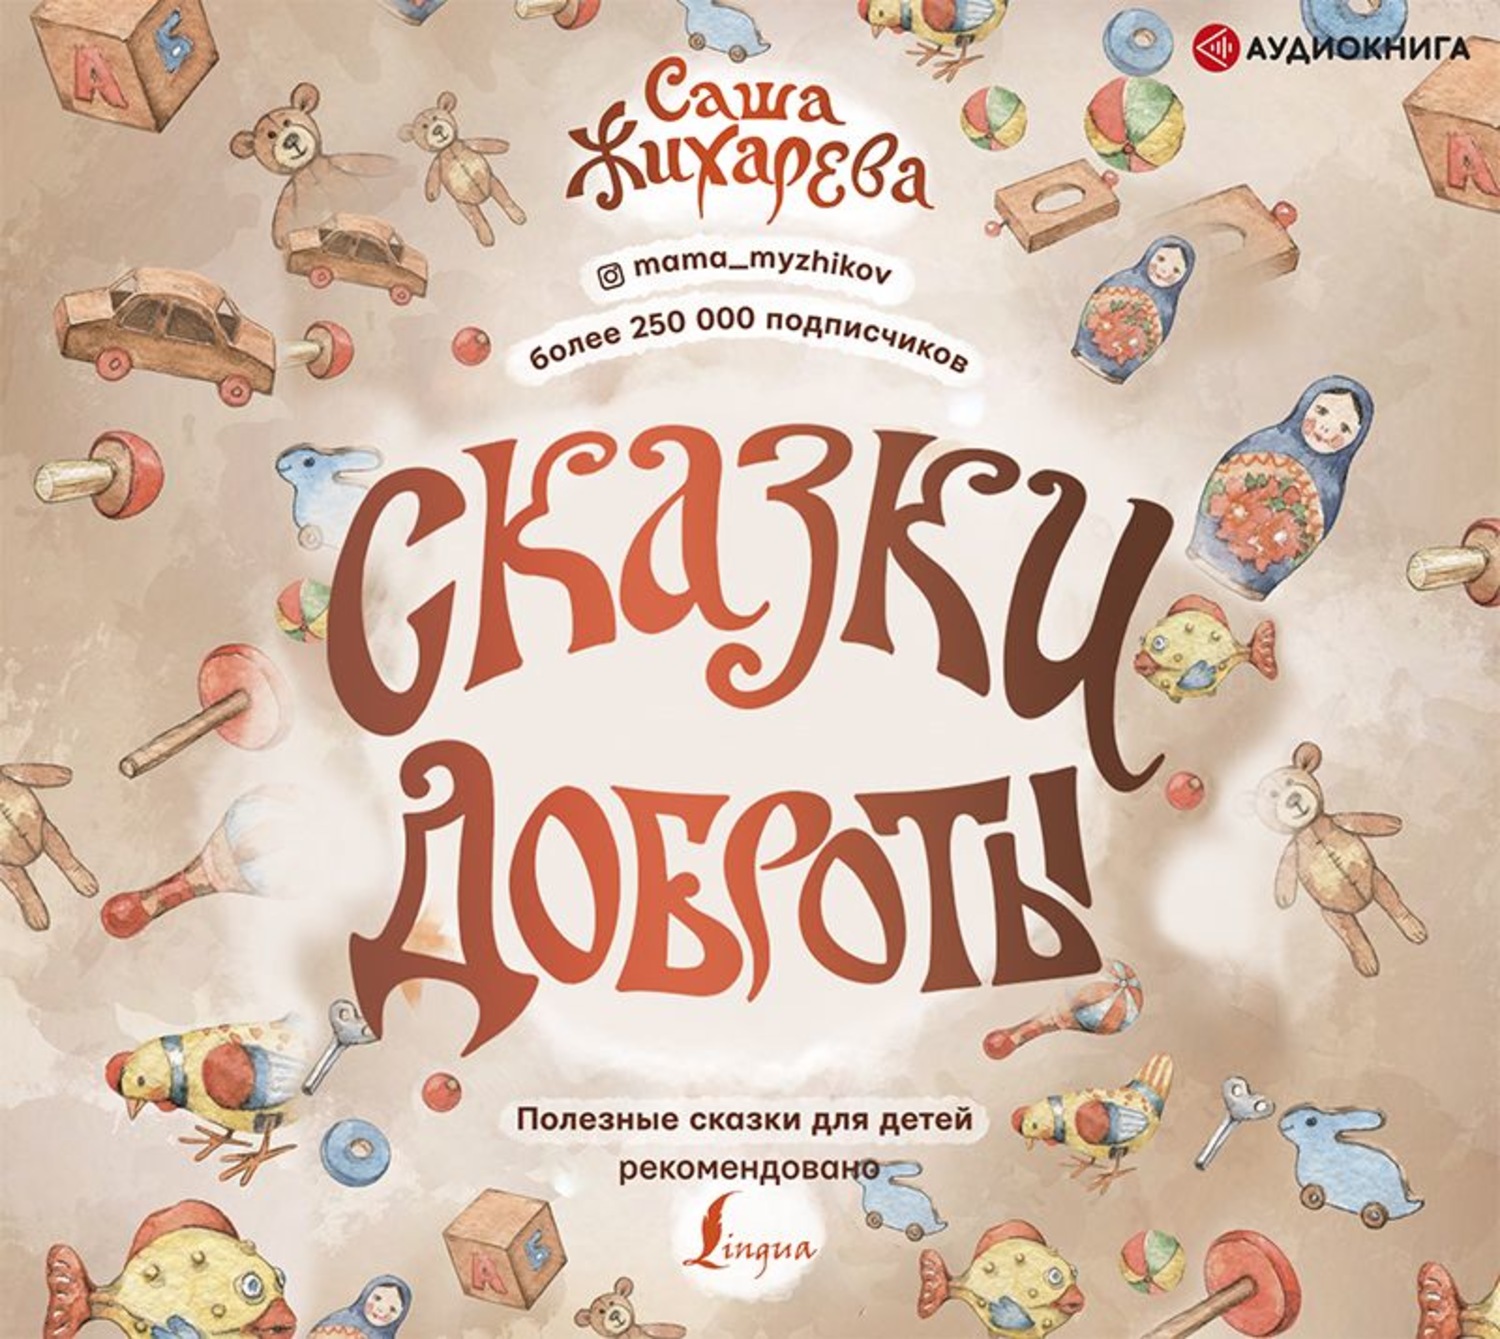 Аудиокниги для детей 8 10. Сказки о доброте. Саша Жихарева сказки доброты. Полезные сказки для детей. Сказочное добро.